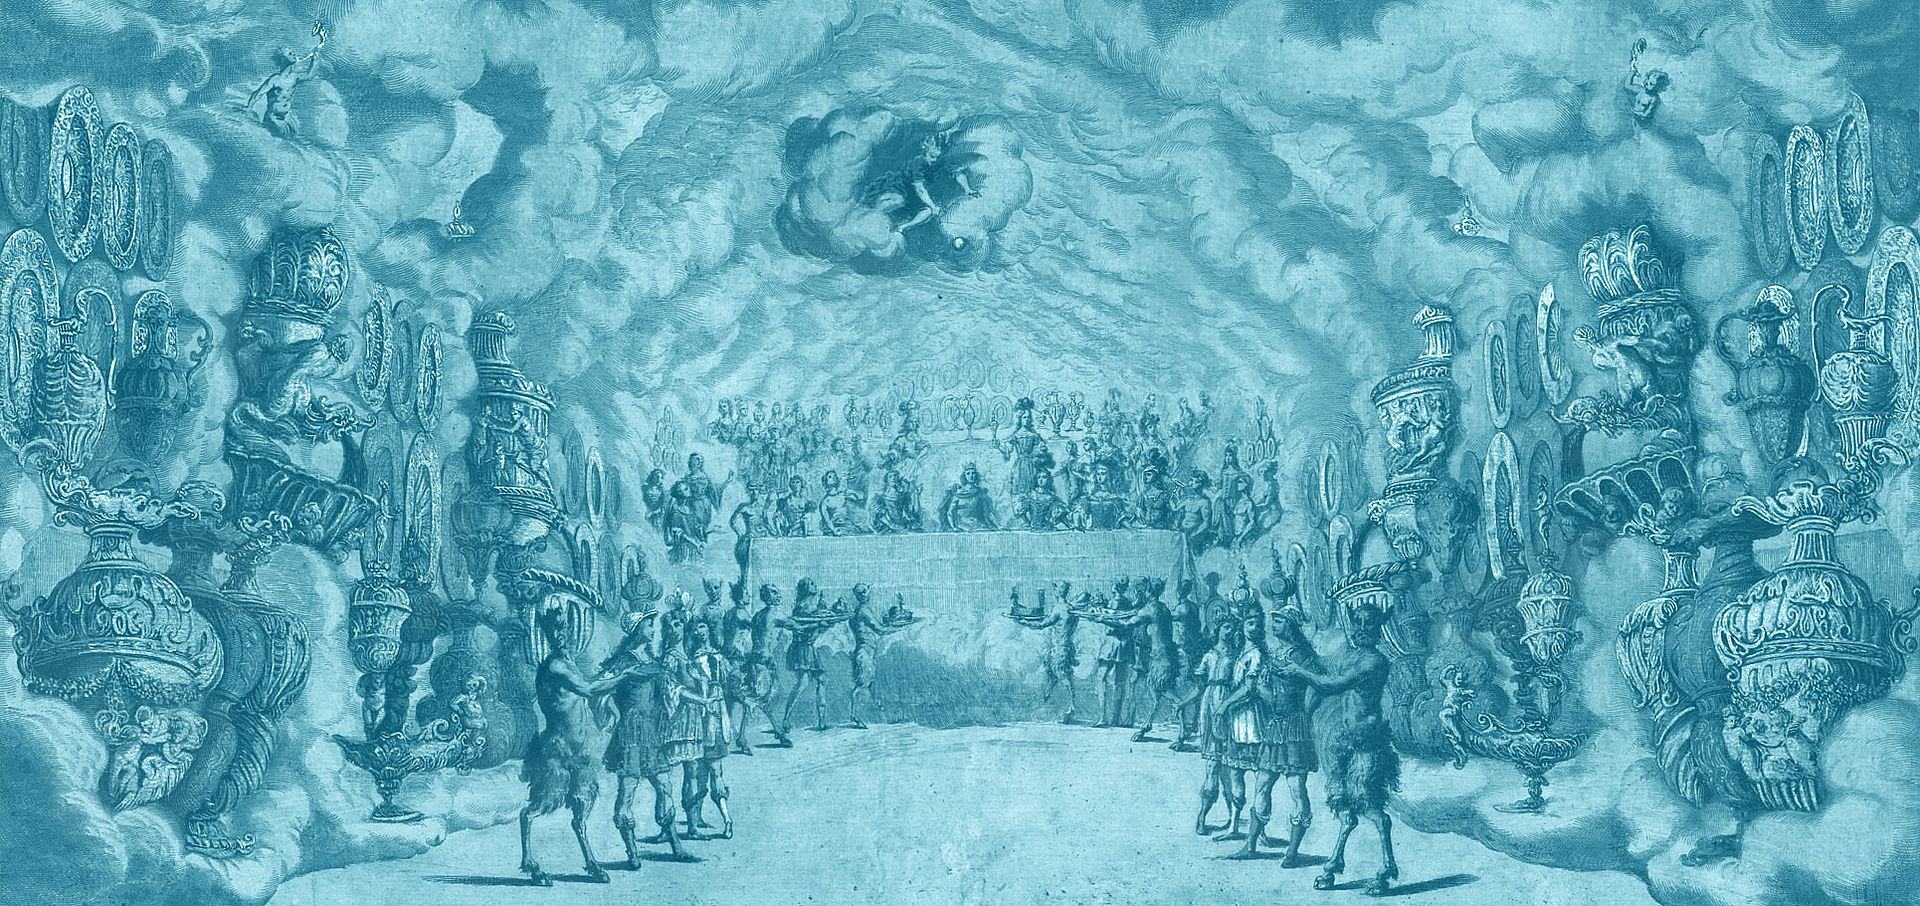 Darstellung einer himmlischen Szenerie, in der Mitte eine Art Altar mit König, Faune bringen Opfergaben. Türkis eingefärbt 